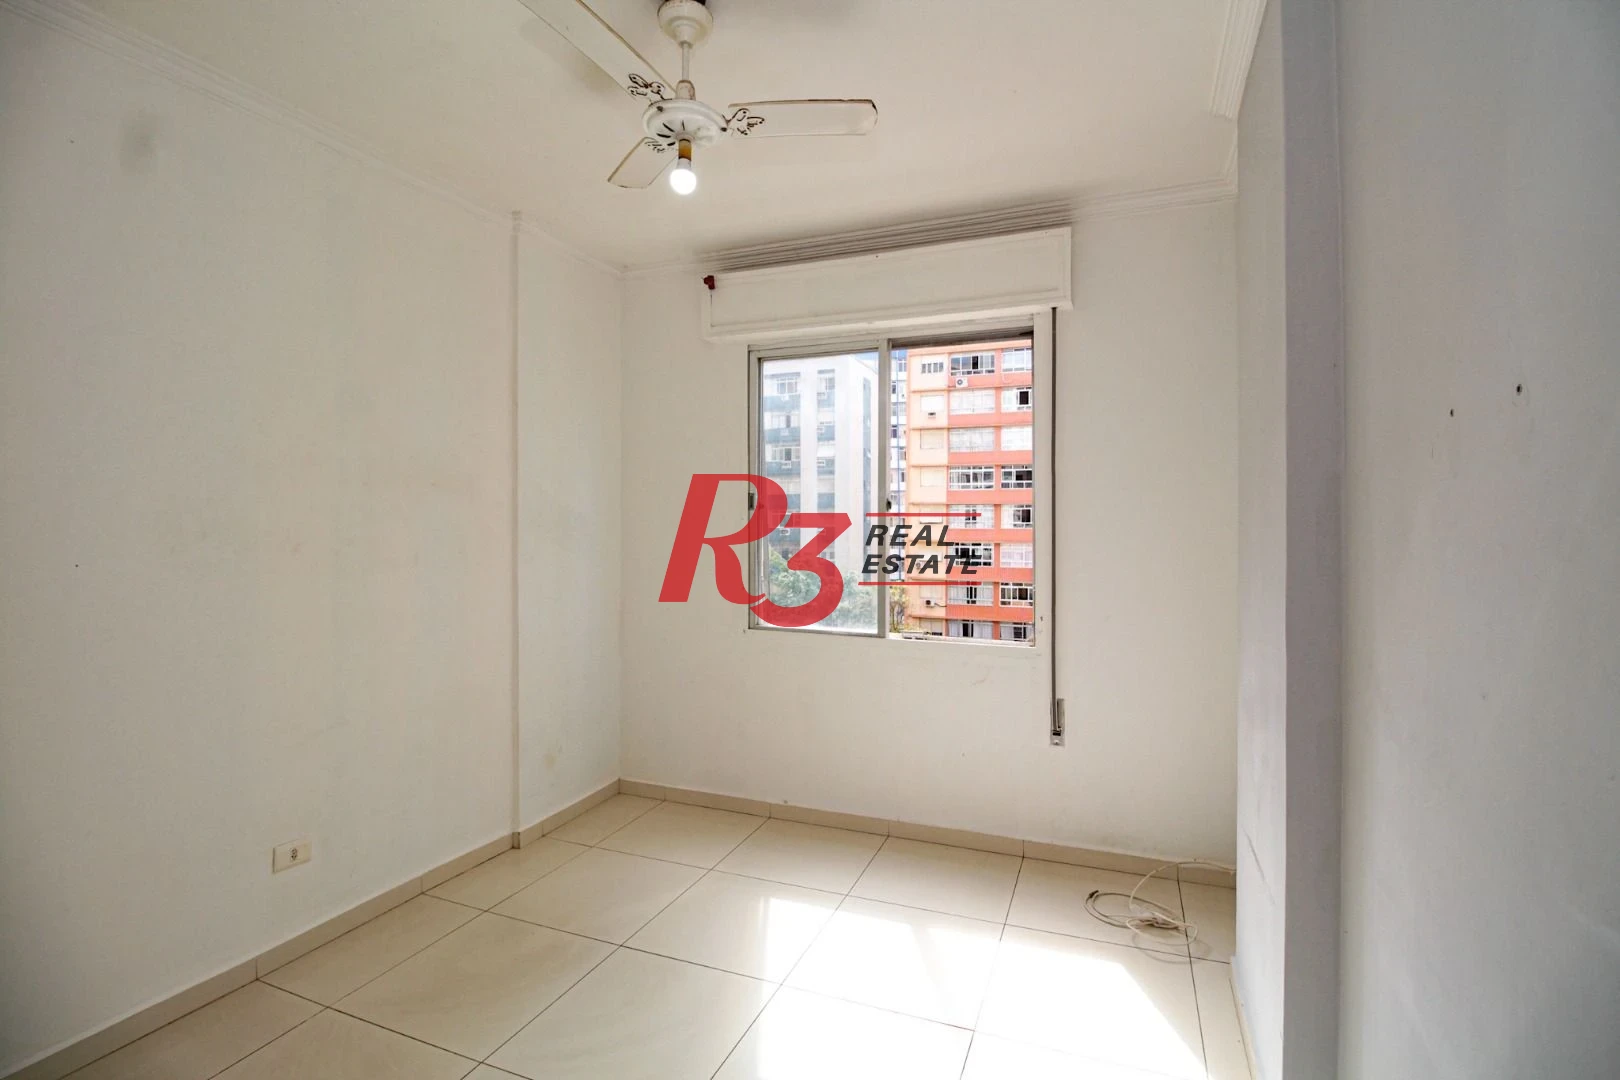 Apartamento à venda, 113 m² por R$ 690.000,00 - Boqueirão - Santos/SP